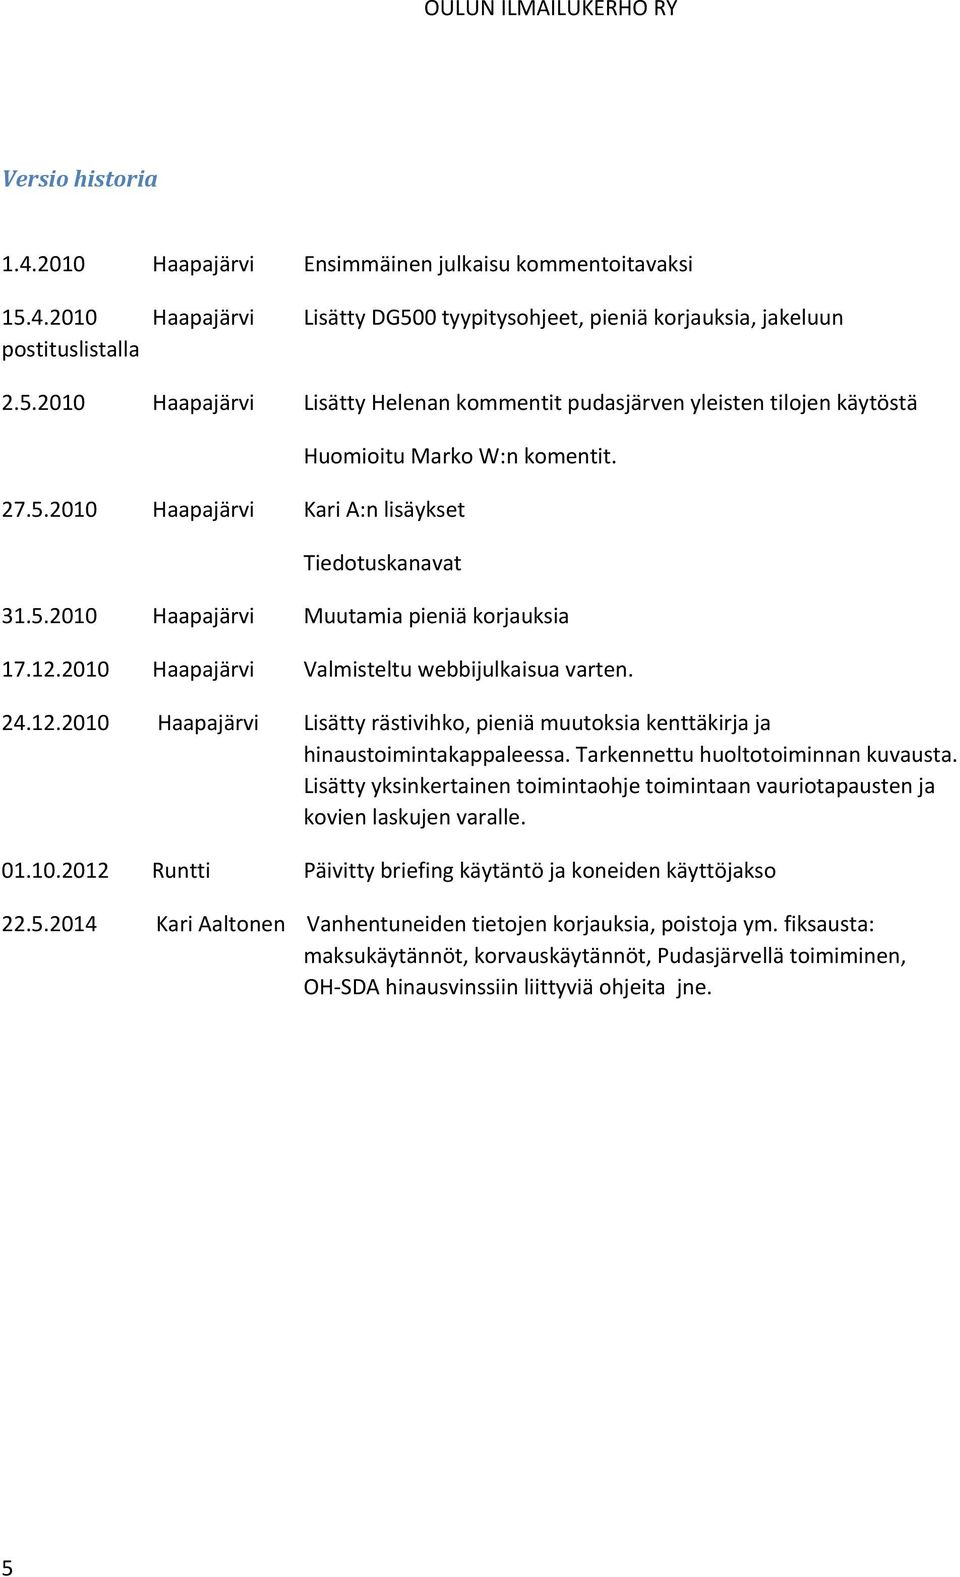 2010 Haapajärvi Valmisteltu webbijulkaisua varten. 24.12.2010 Haapajärvi Lisätty rästivihko, pieniä muutoksia kenttäkirja ja hinaustoimintakappaleessa. Tarkennettu huoltotoiminnan kuvausta.